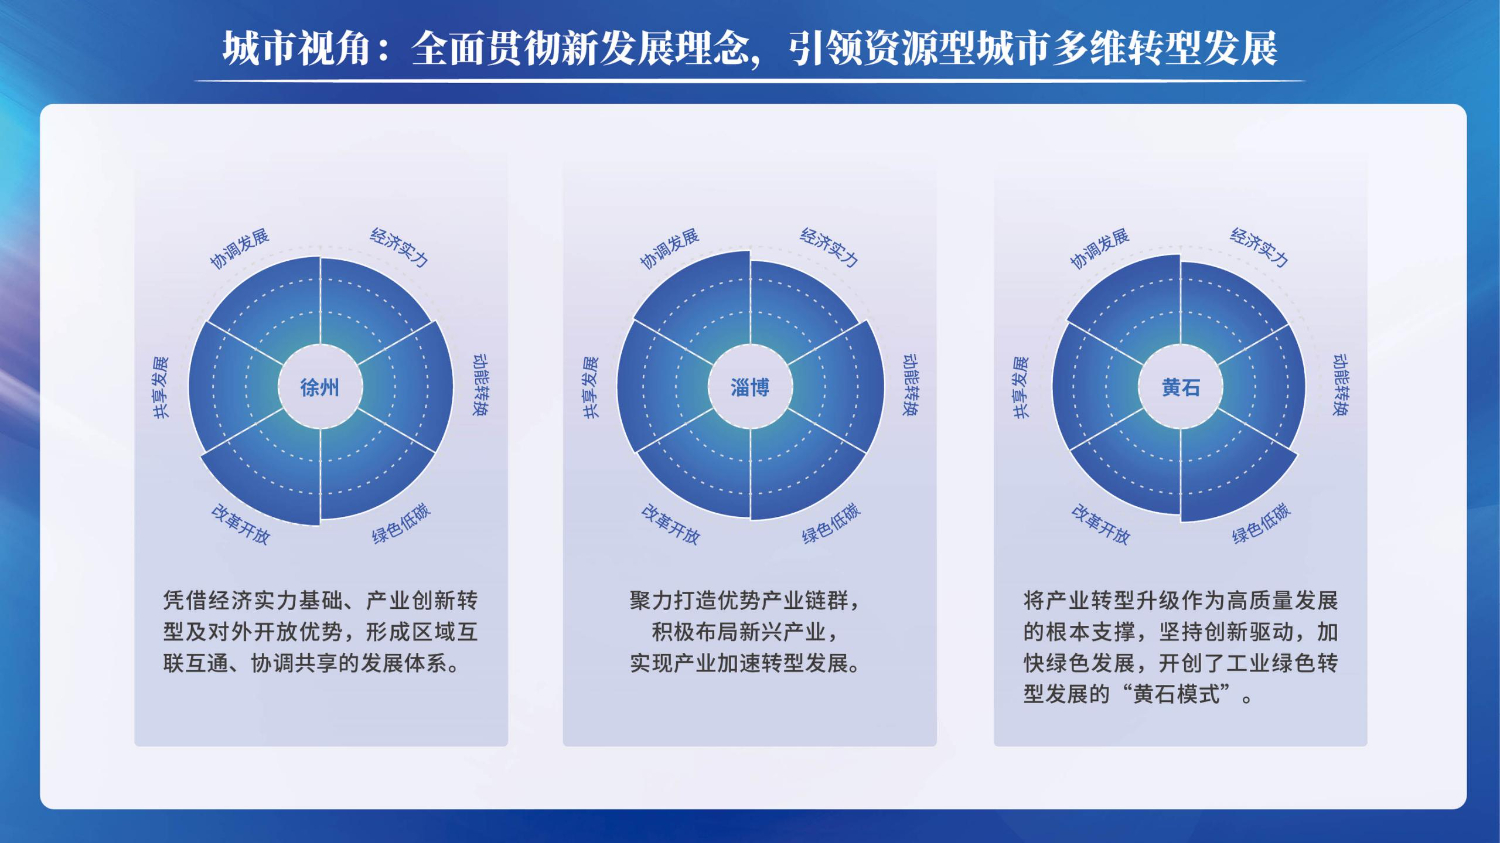 06201503中国资源型城市转型发展指数(1)_11.jpg